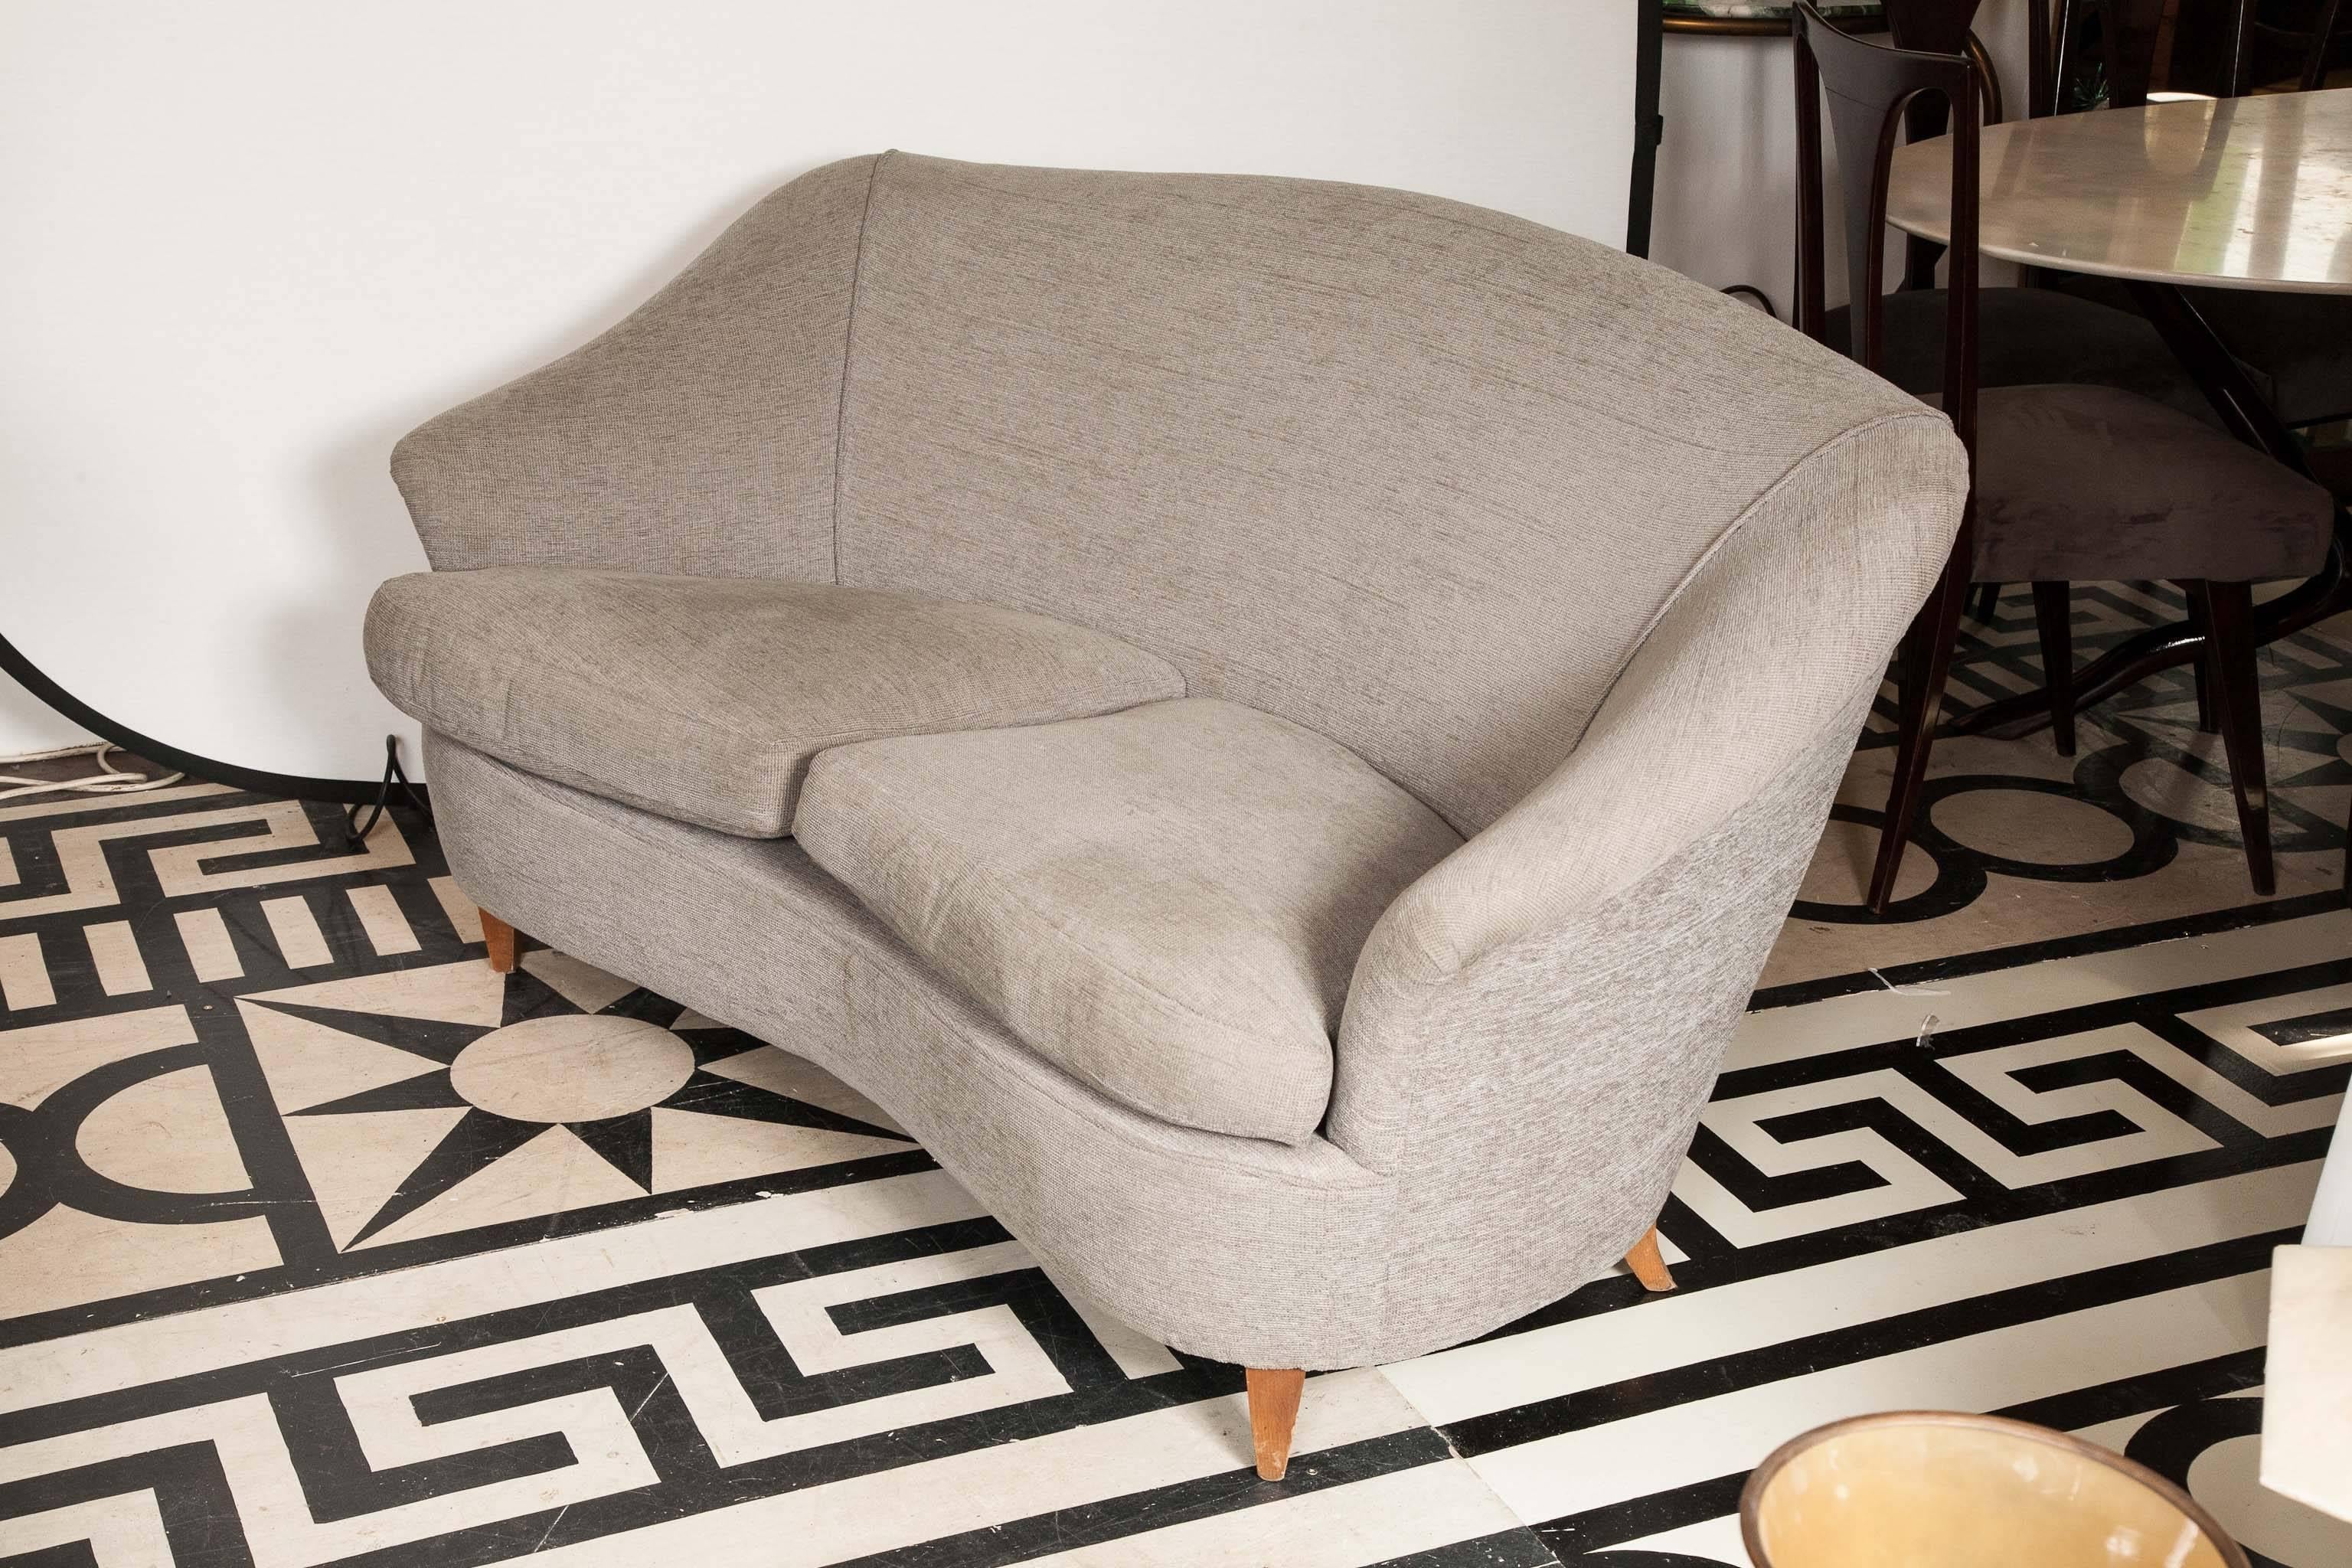 Mid-20th Century 1940-1945s Italian Sofa Attributed to Ico Parisi